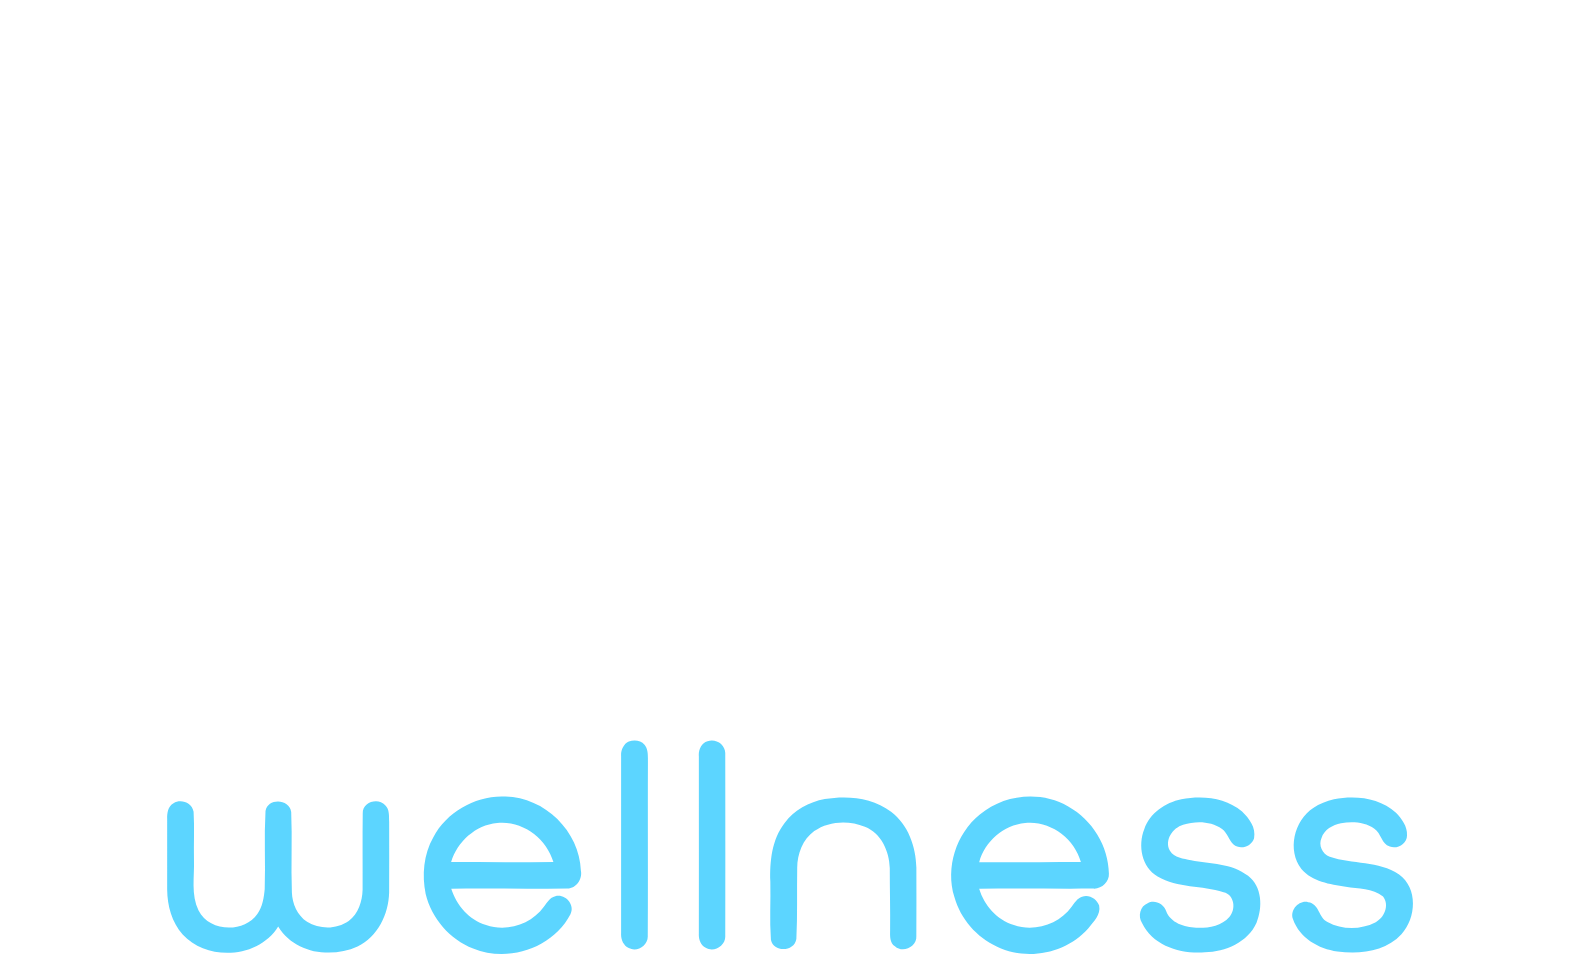 Ayr Wellness logo large for dark backgrounds (transparent PNG)